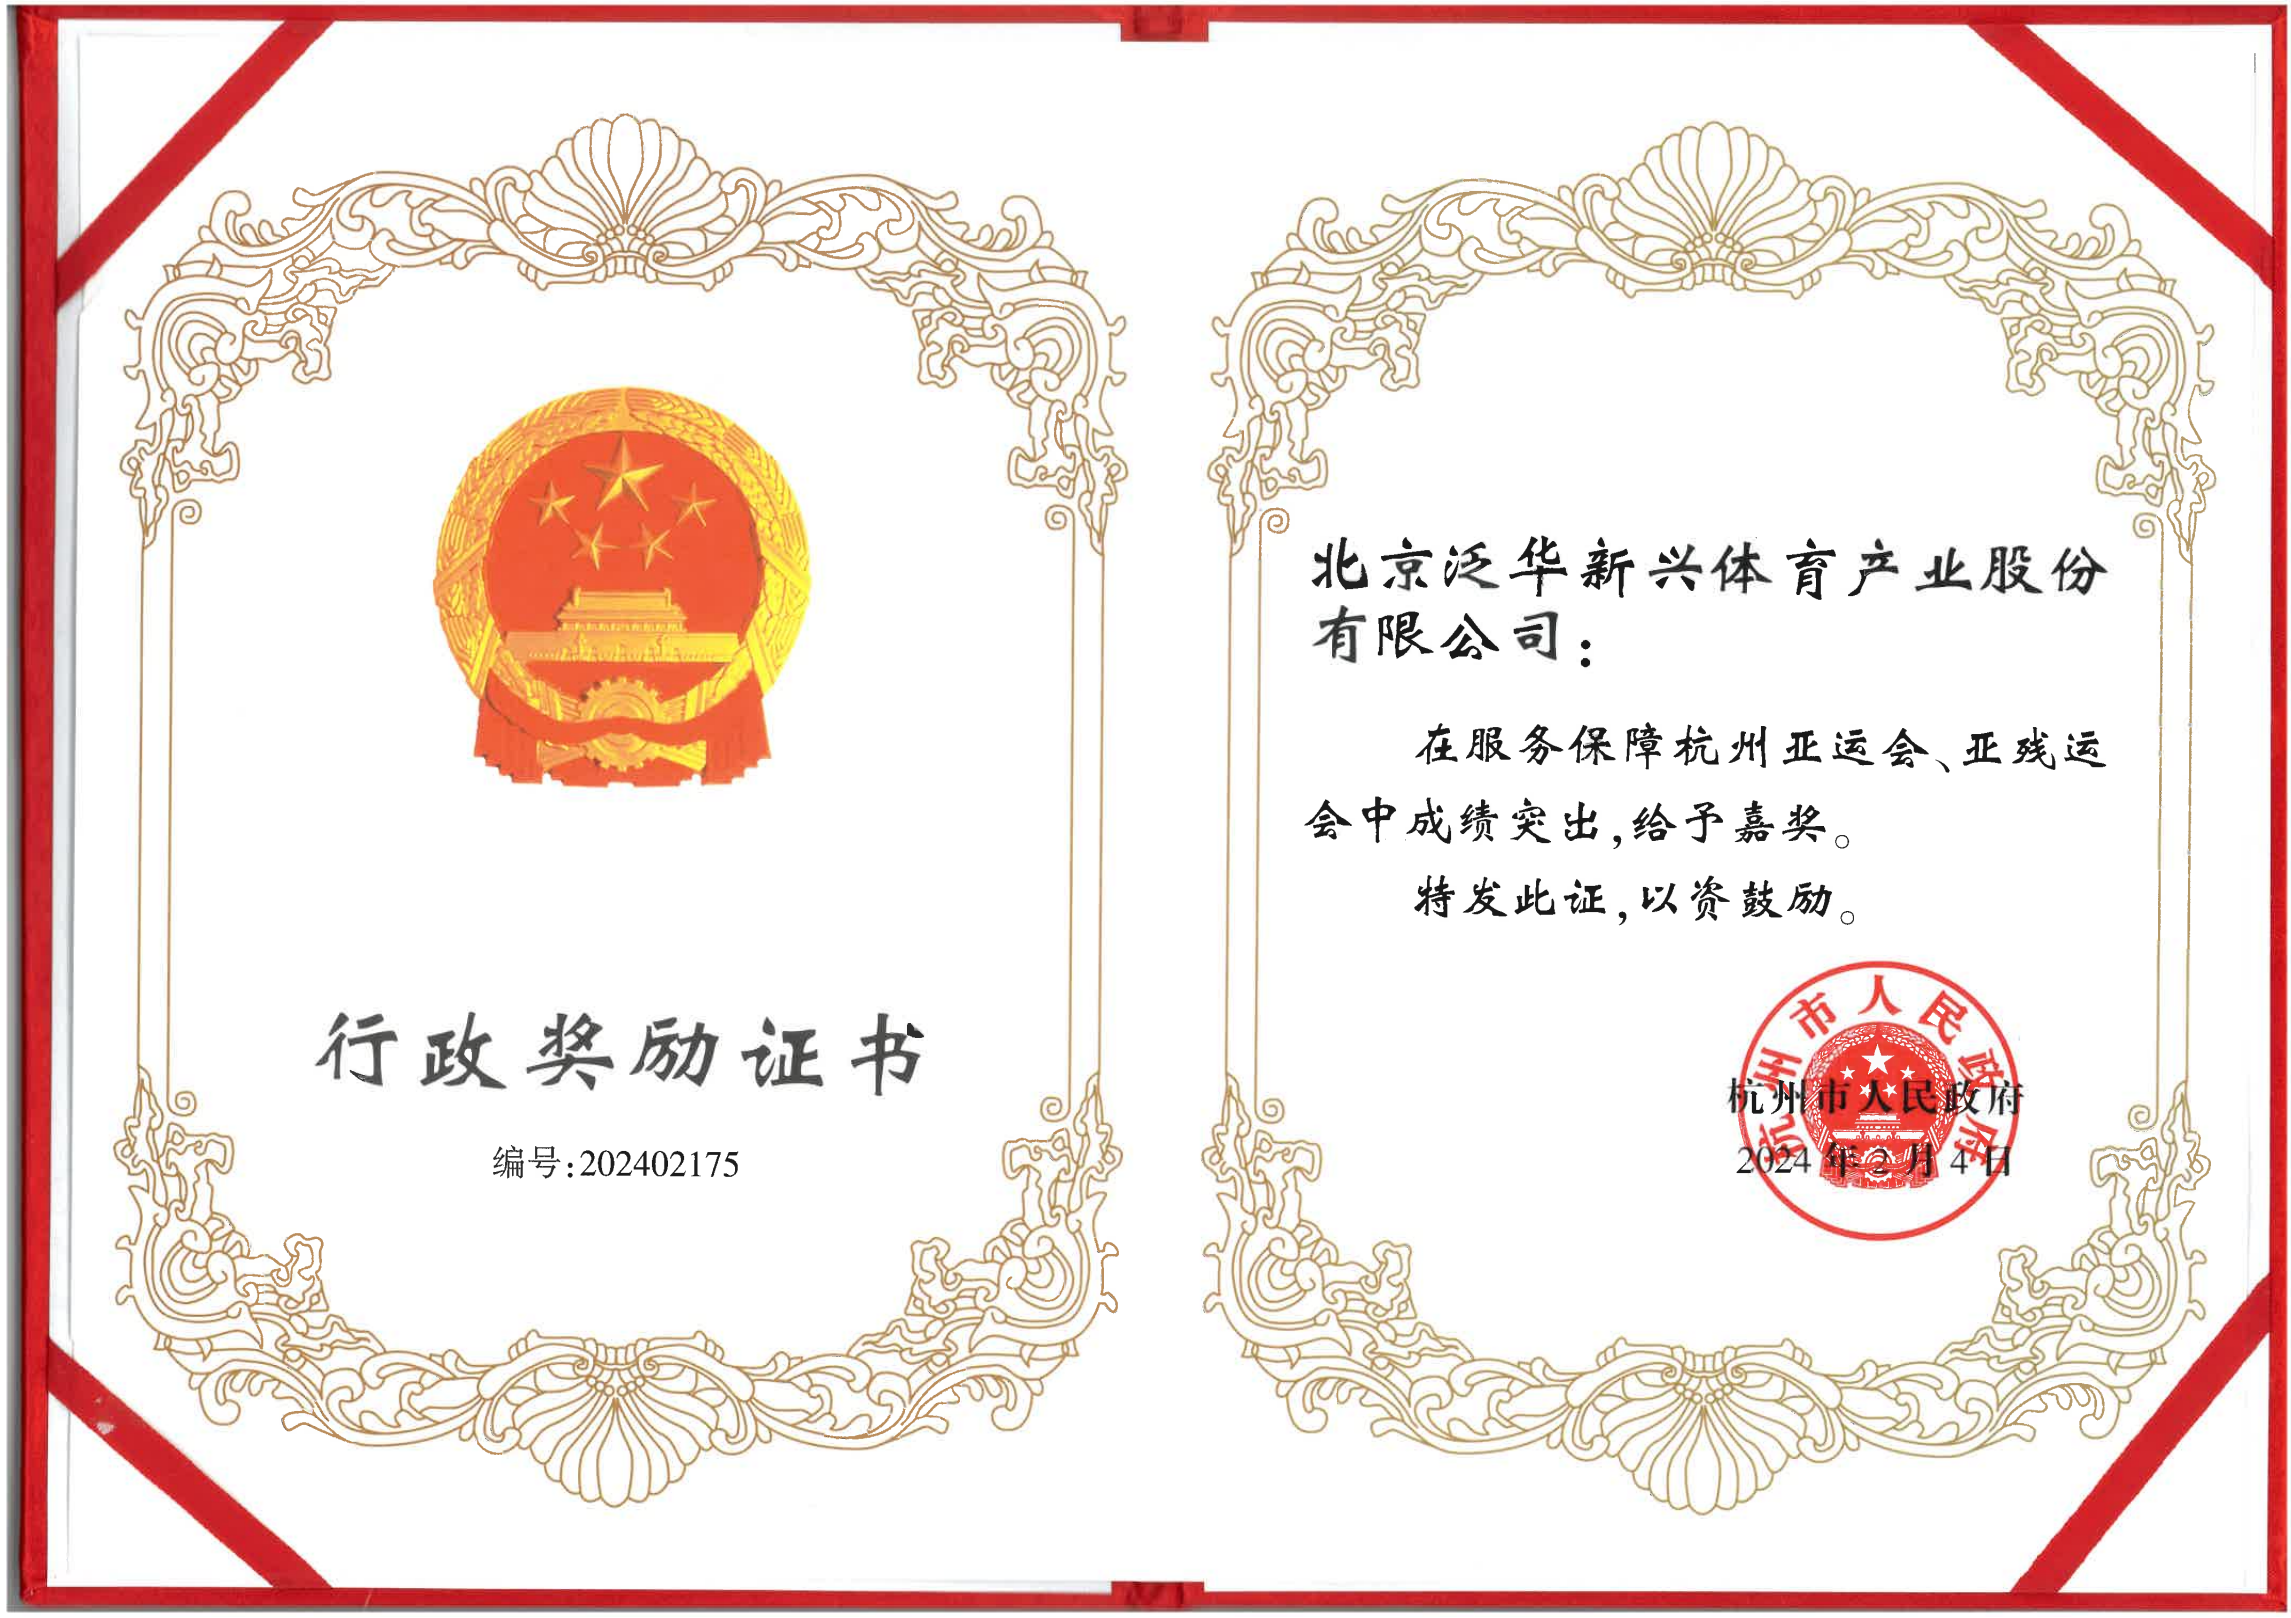 泛华体育荣获行政奖励证书，为杭州亚运会与亚残运会提供卓越服务保障